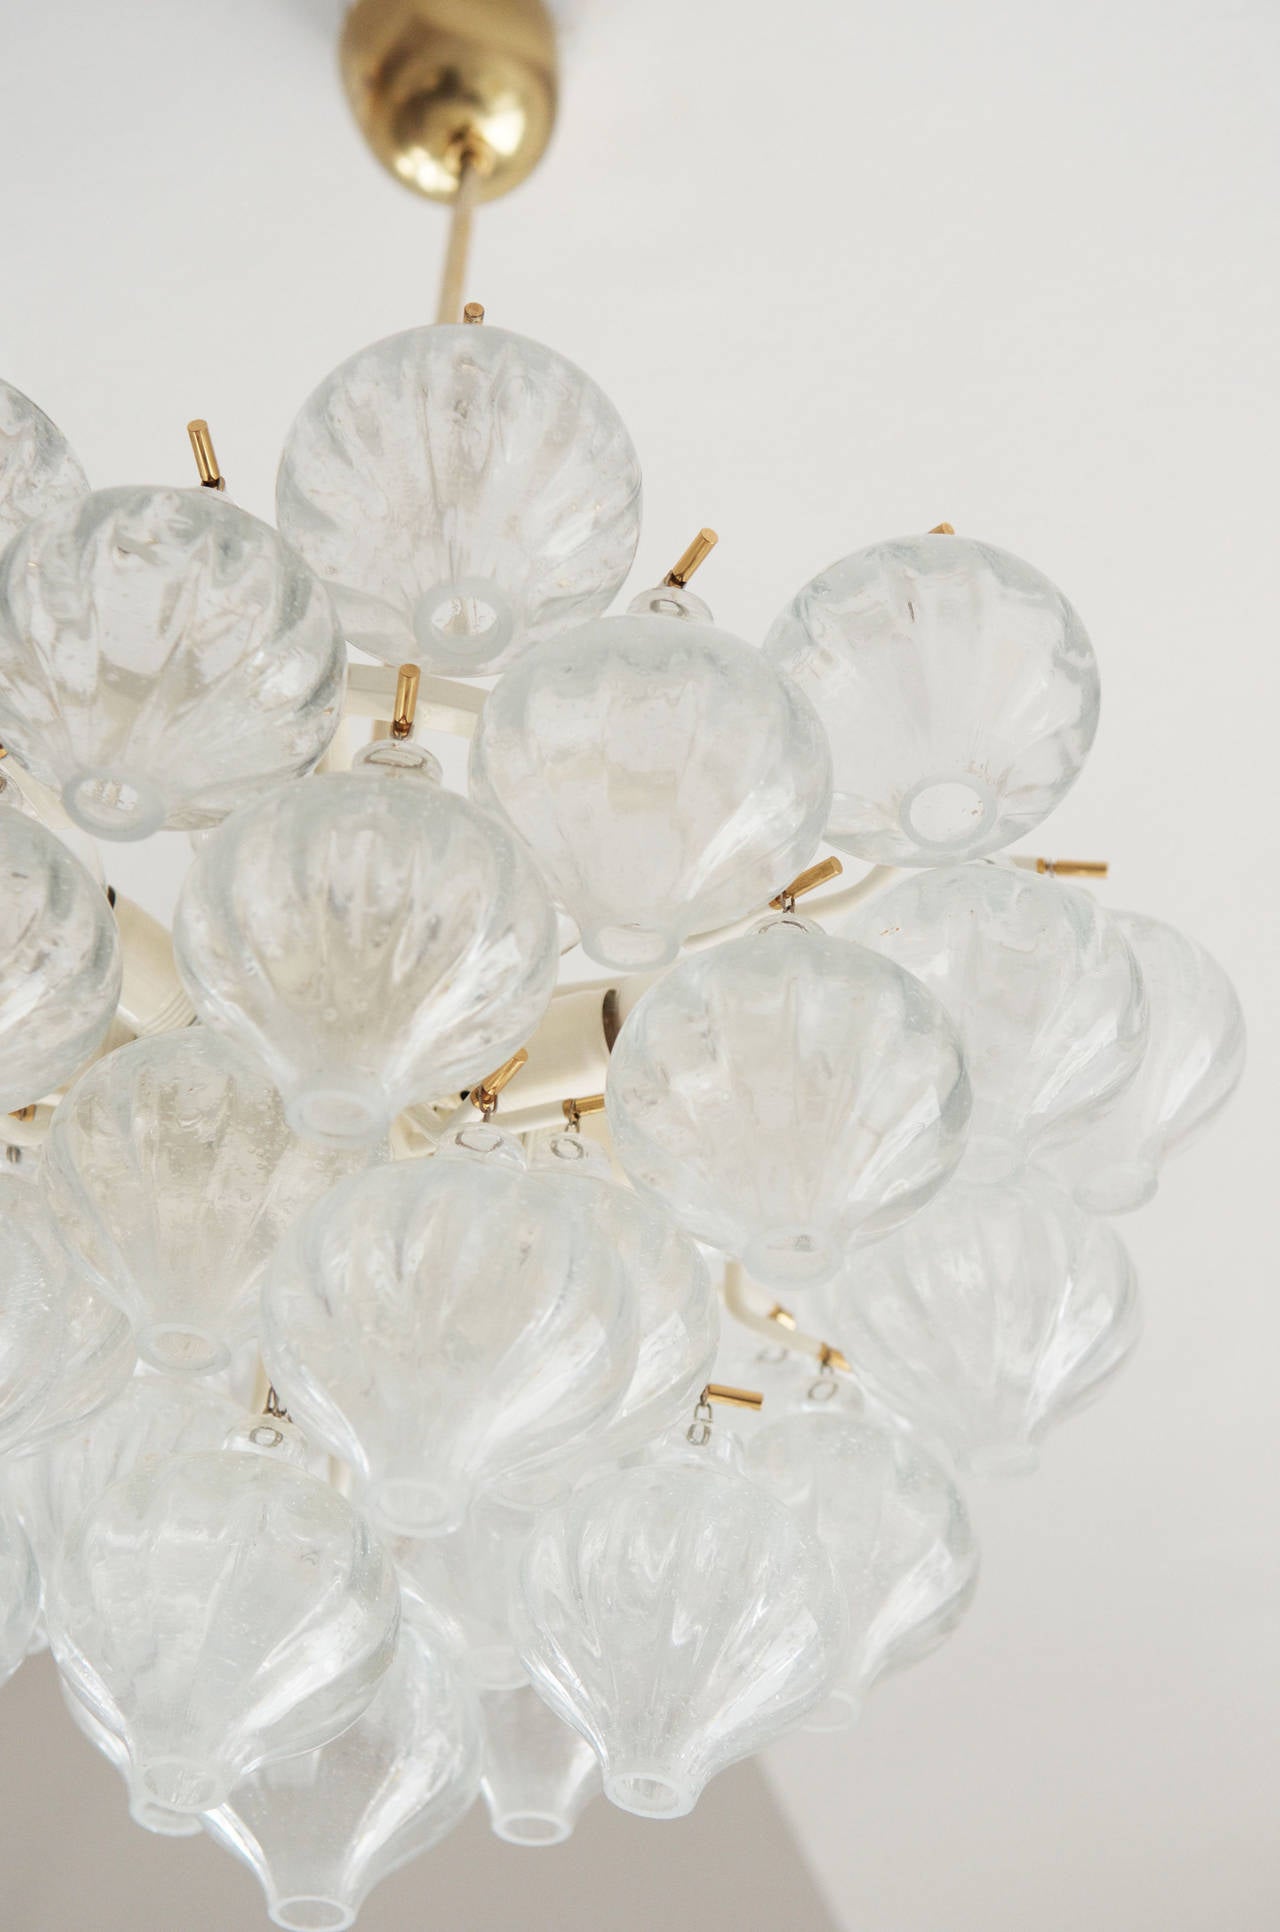 Kronleuchter mit zehn Glühbirnen und 41 mundgeblasenen Glaselementen, hergestellt von J.T. Kalmar.
Sehr guter Zustand mit minimalen Altersspuren, wie Patina auf Messing. Die Glaskolben haben keine Schäden.
Die Gesamtlänge beträgt nun ca. 100cm